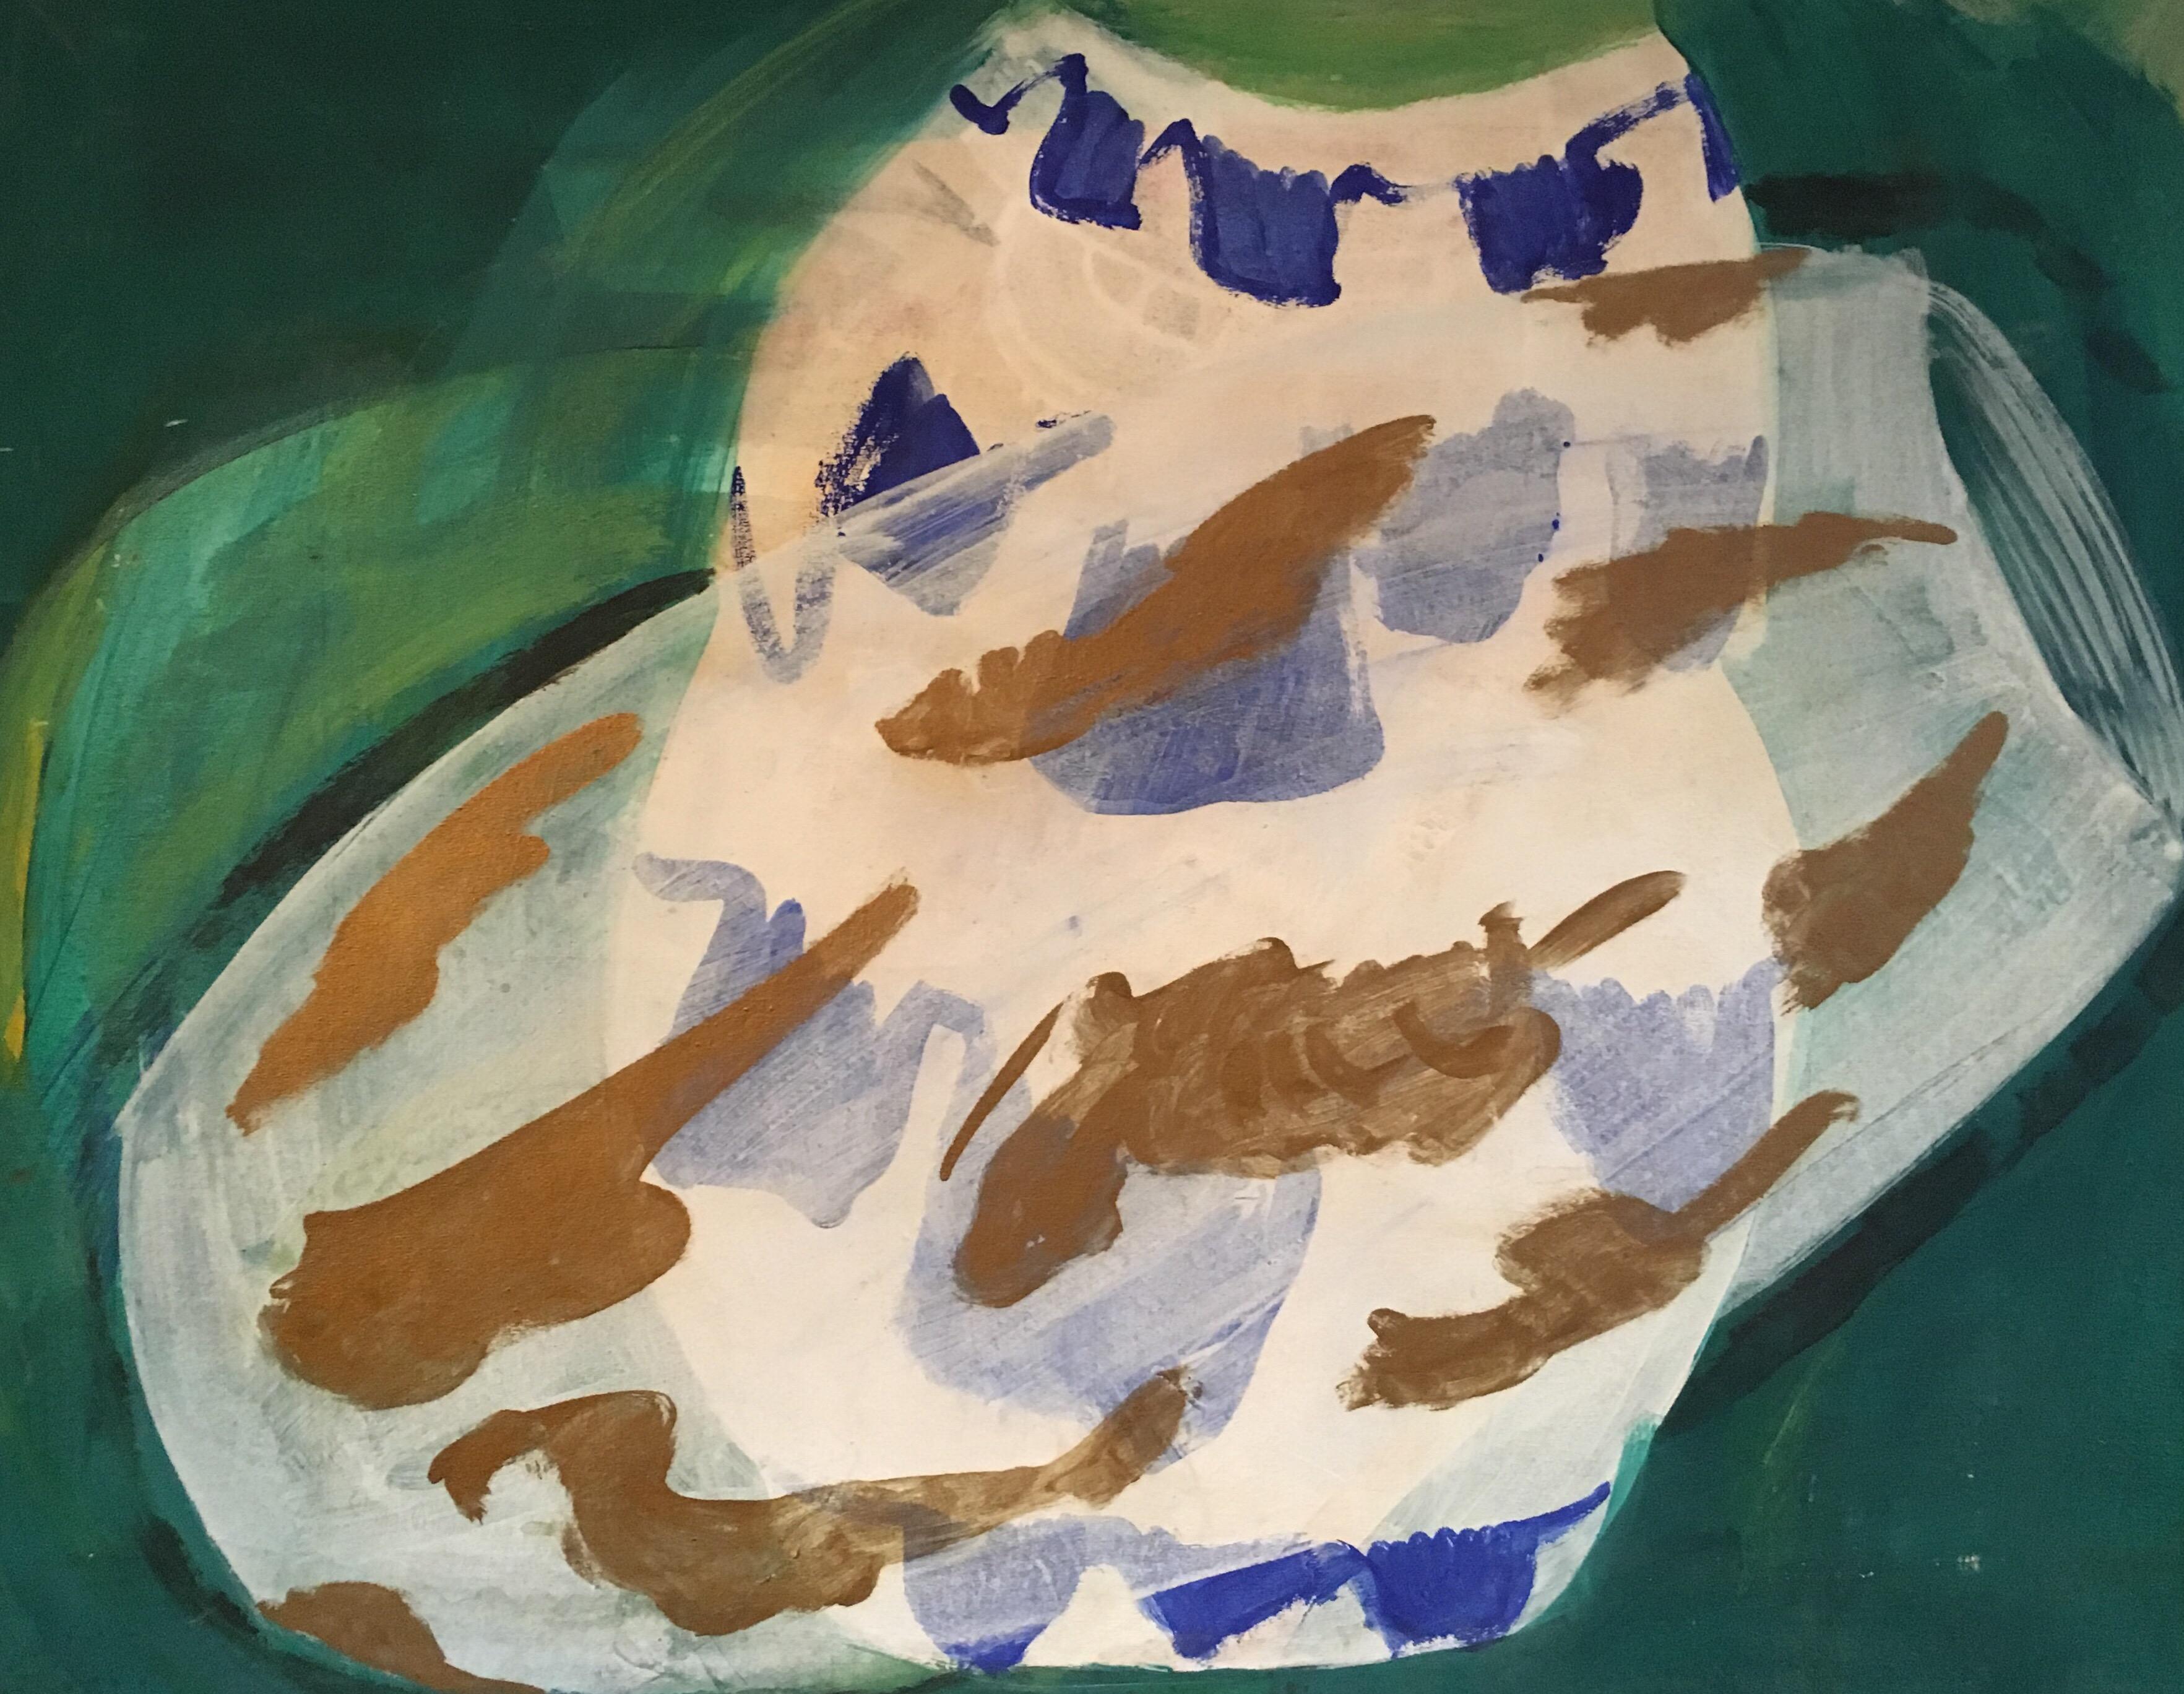 Abstract Painting Roland Gautier - Peinture à l'huile abstraite, couleur verte, bleue et or